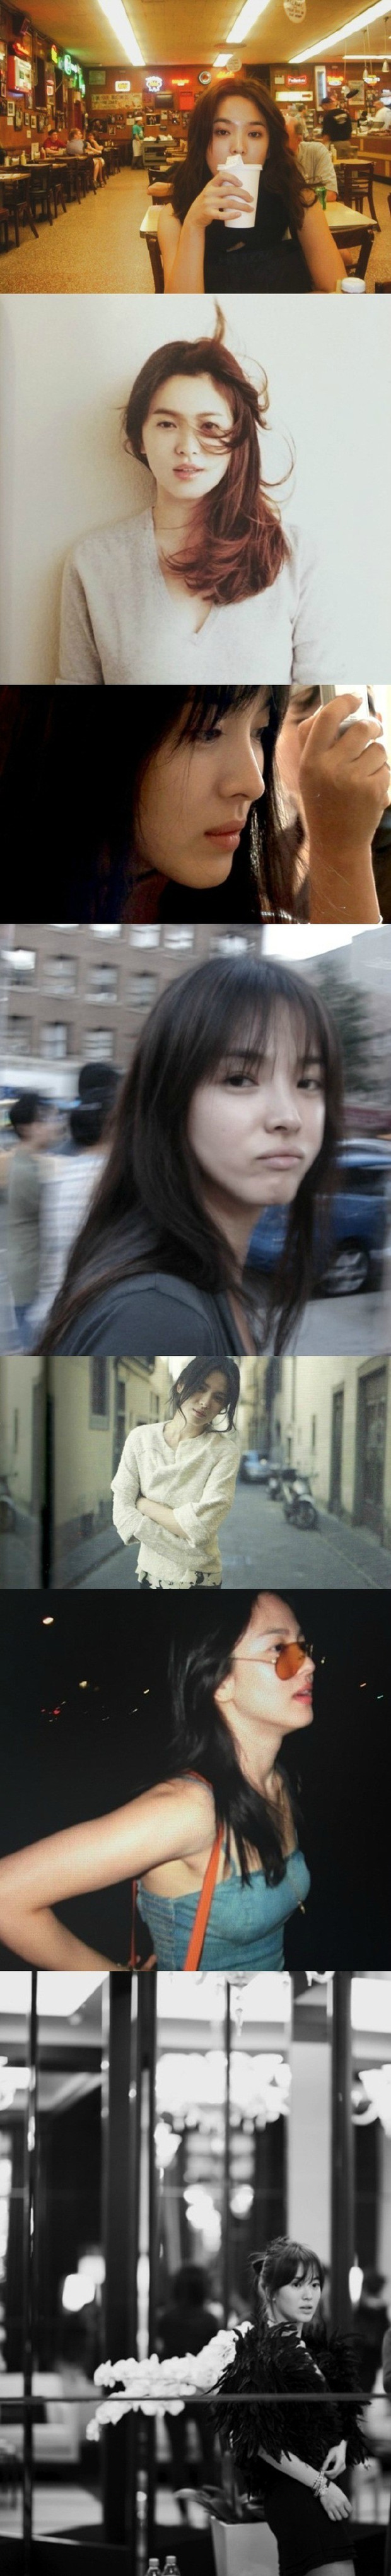 Nhan sắc của Song Hye Kyo: Tạp chí đã đẹp, nhưng xuất sắc nhất là những khoảnh khắc đời thường - Ảnh 2.